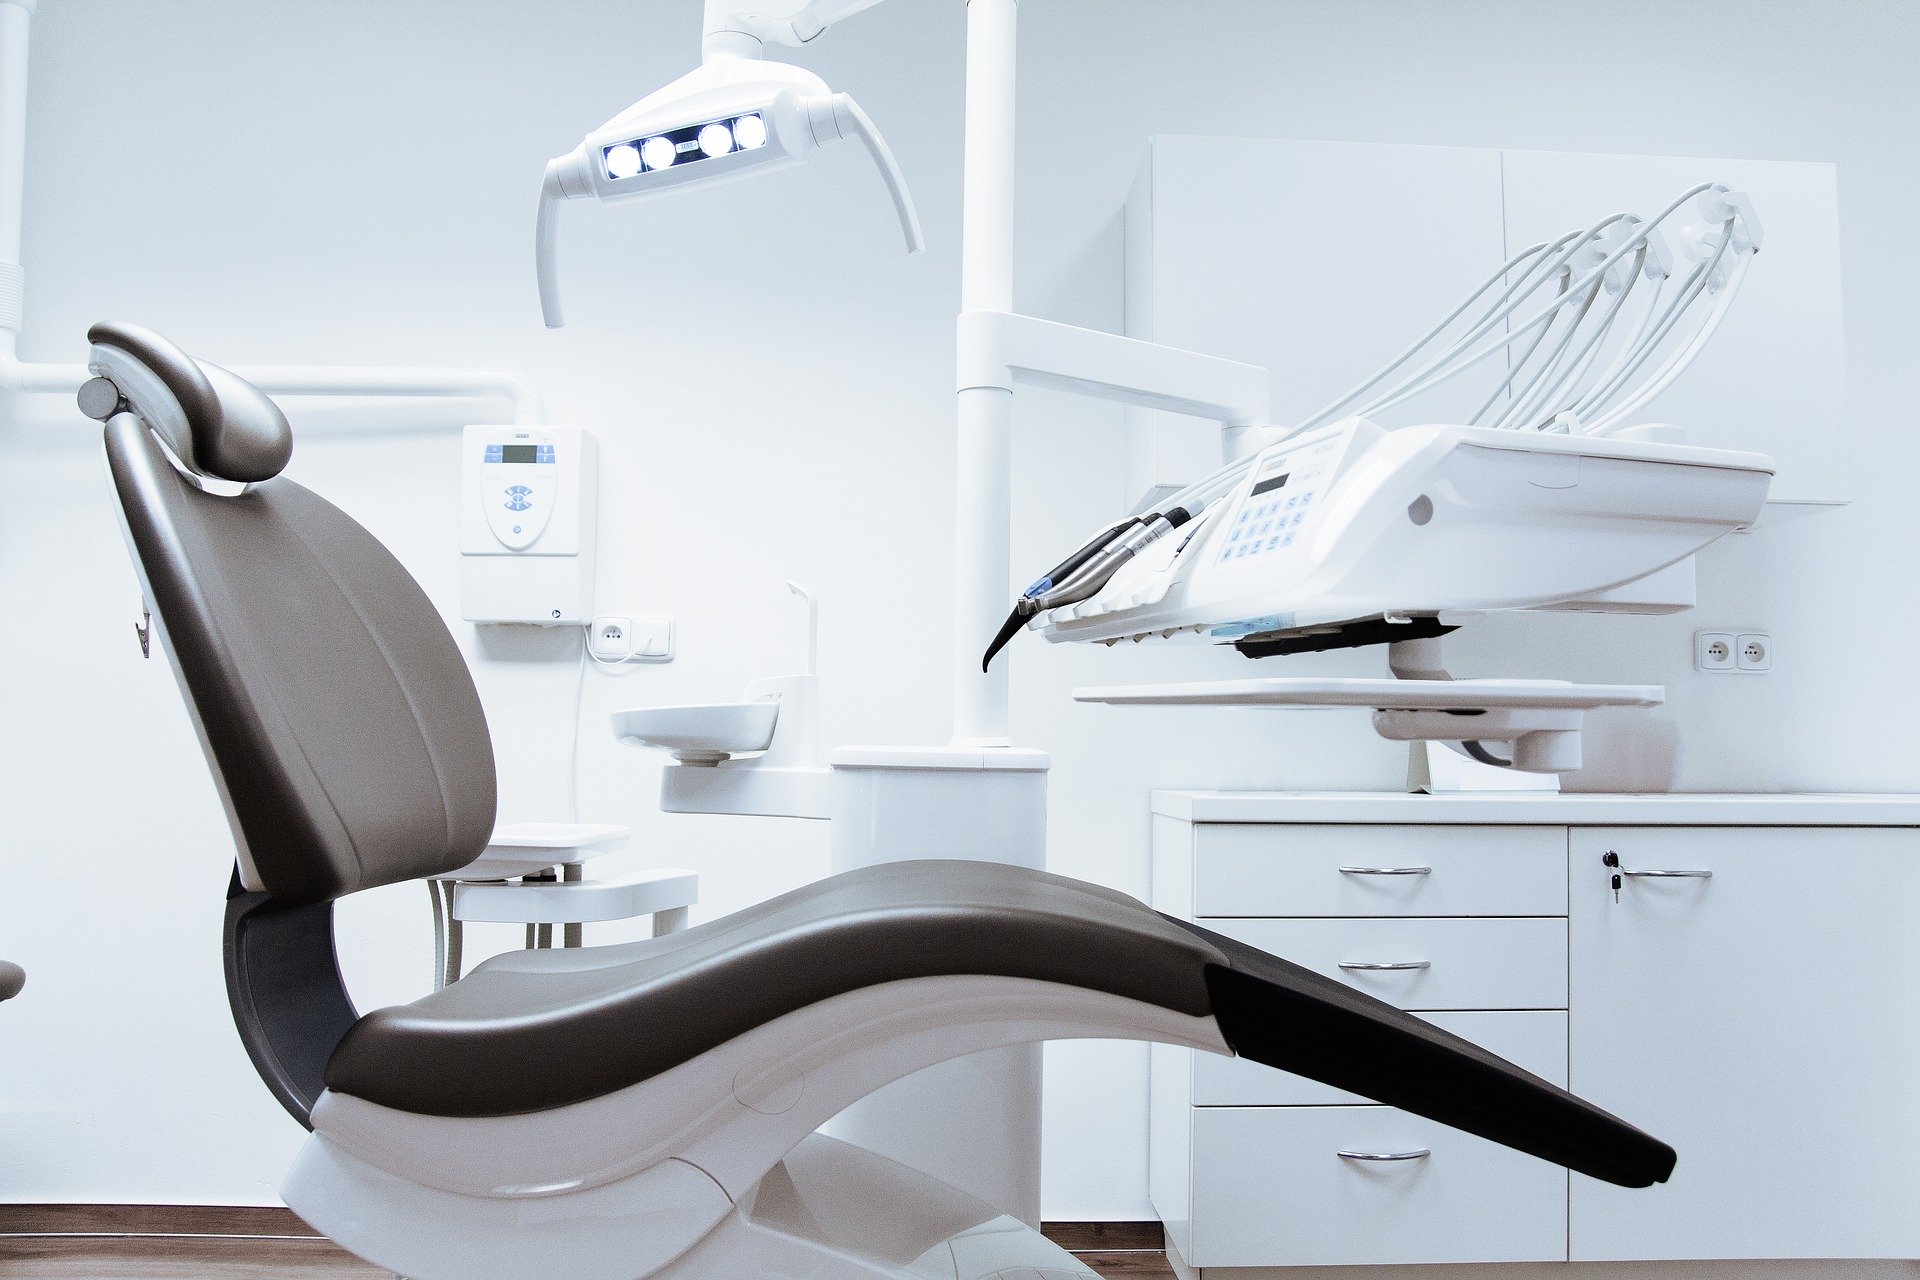 Leczenie zębów pod narkozą – komfort i bezpieczeństwo pacjenta